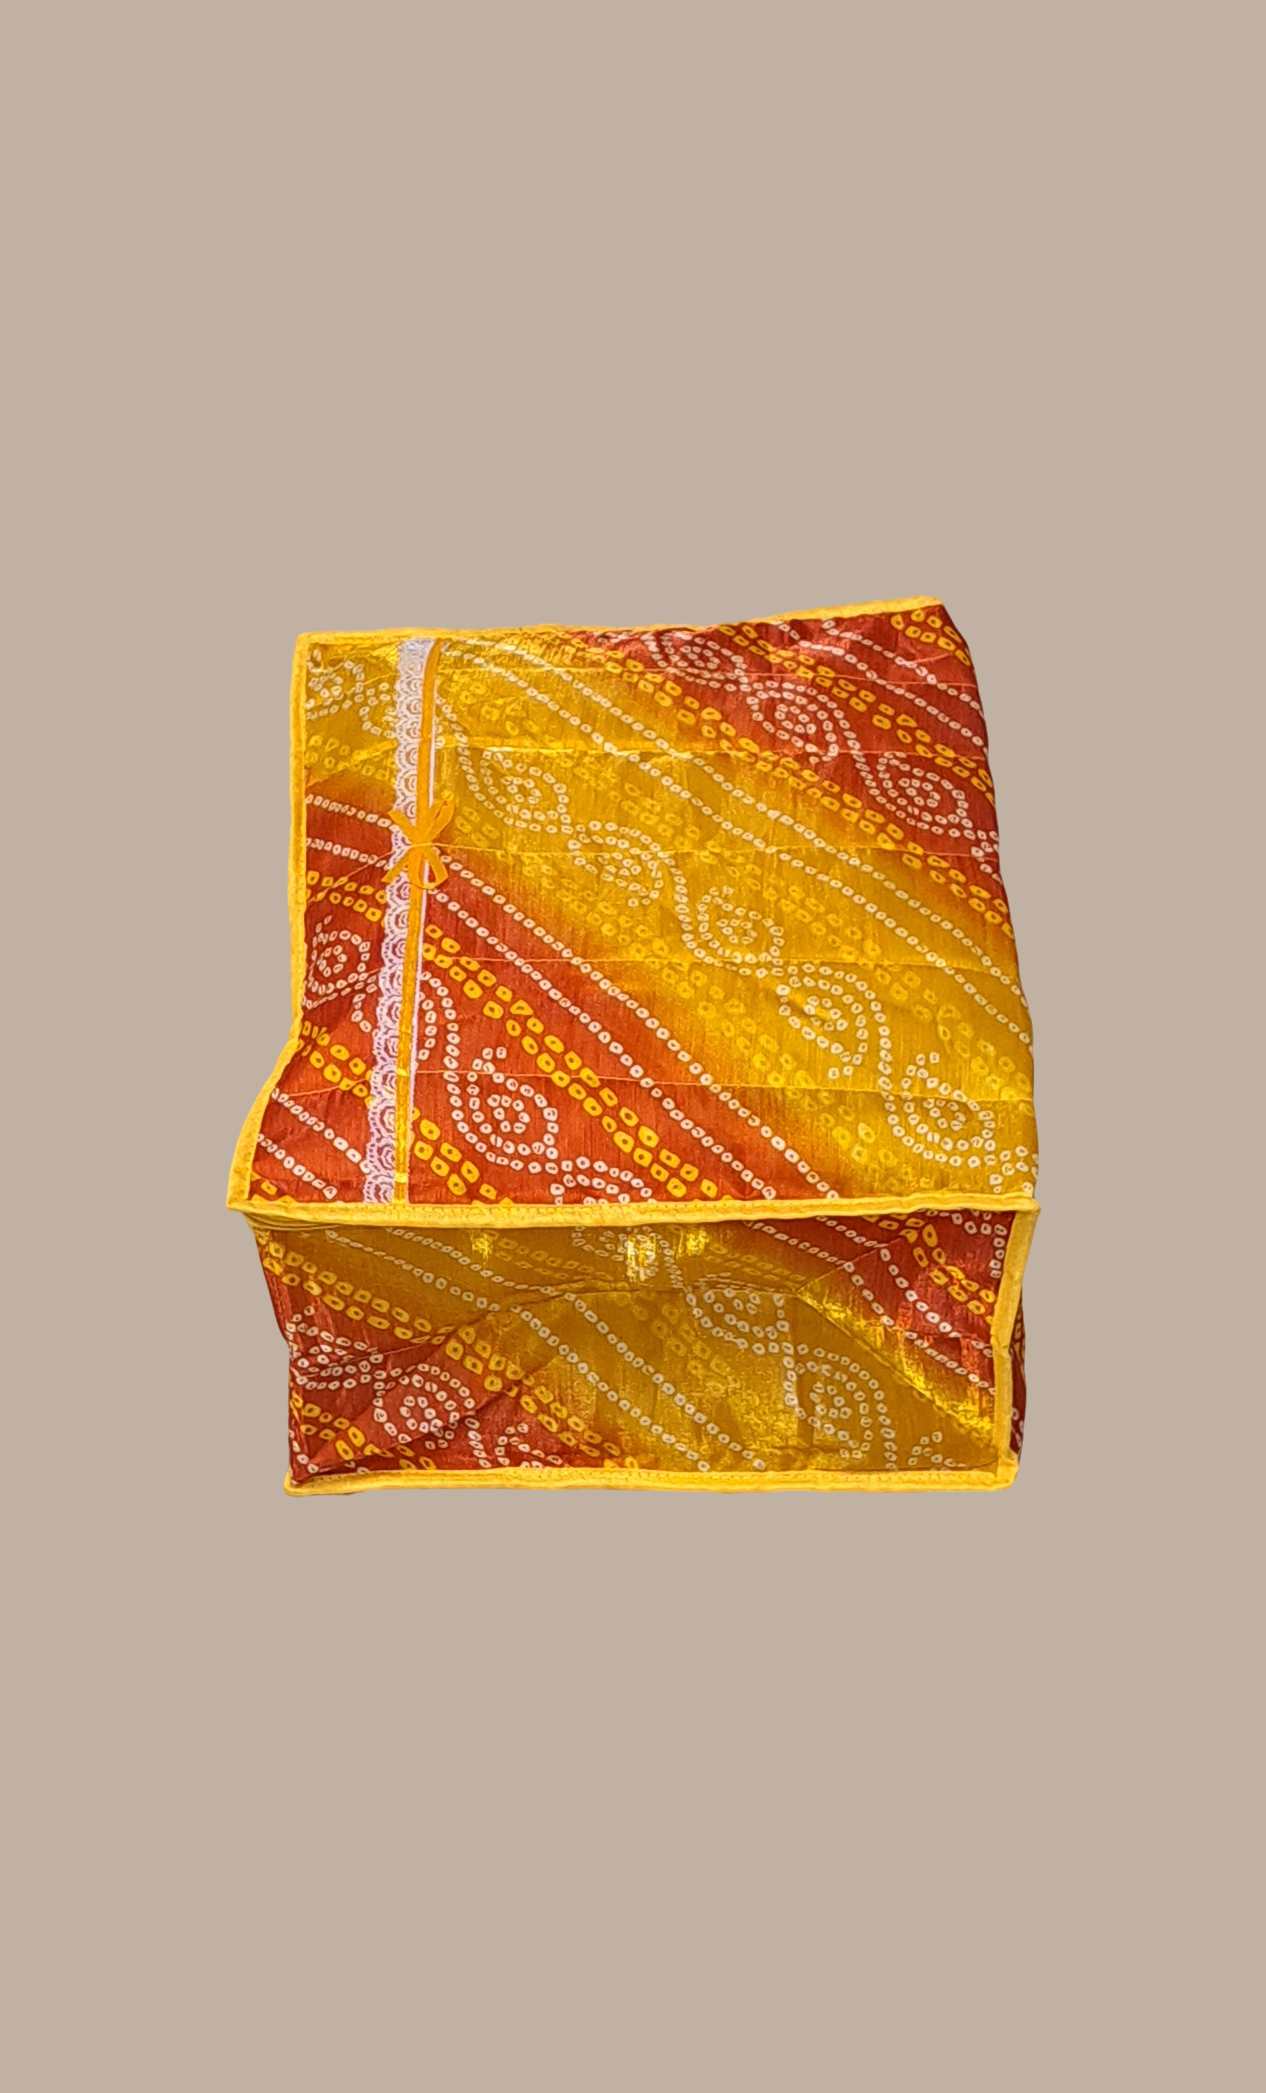 Canary Yellow Bandhani Sari Cover